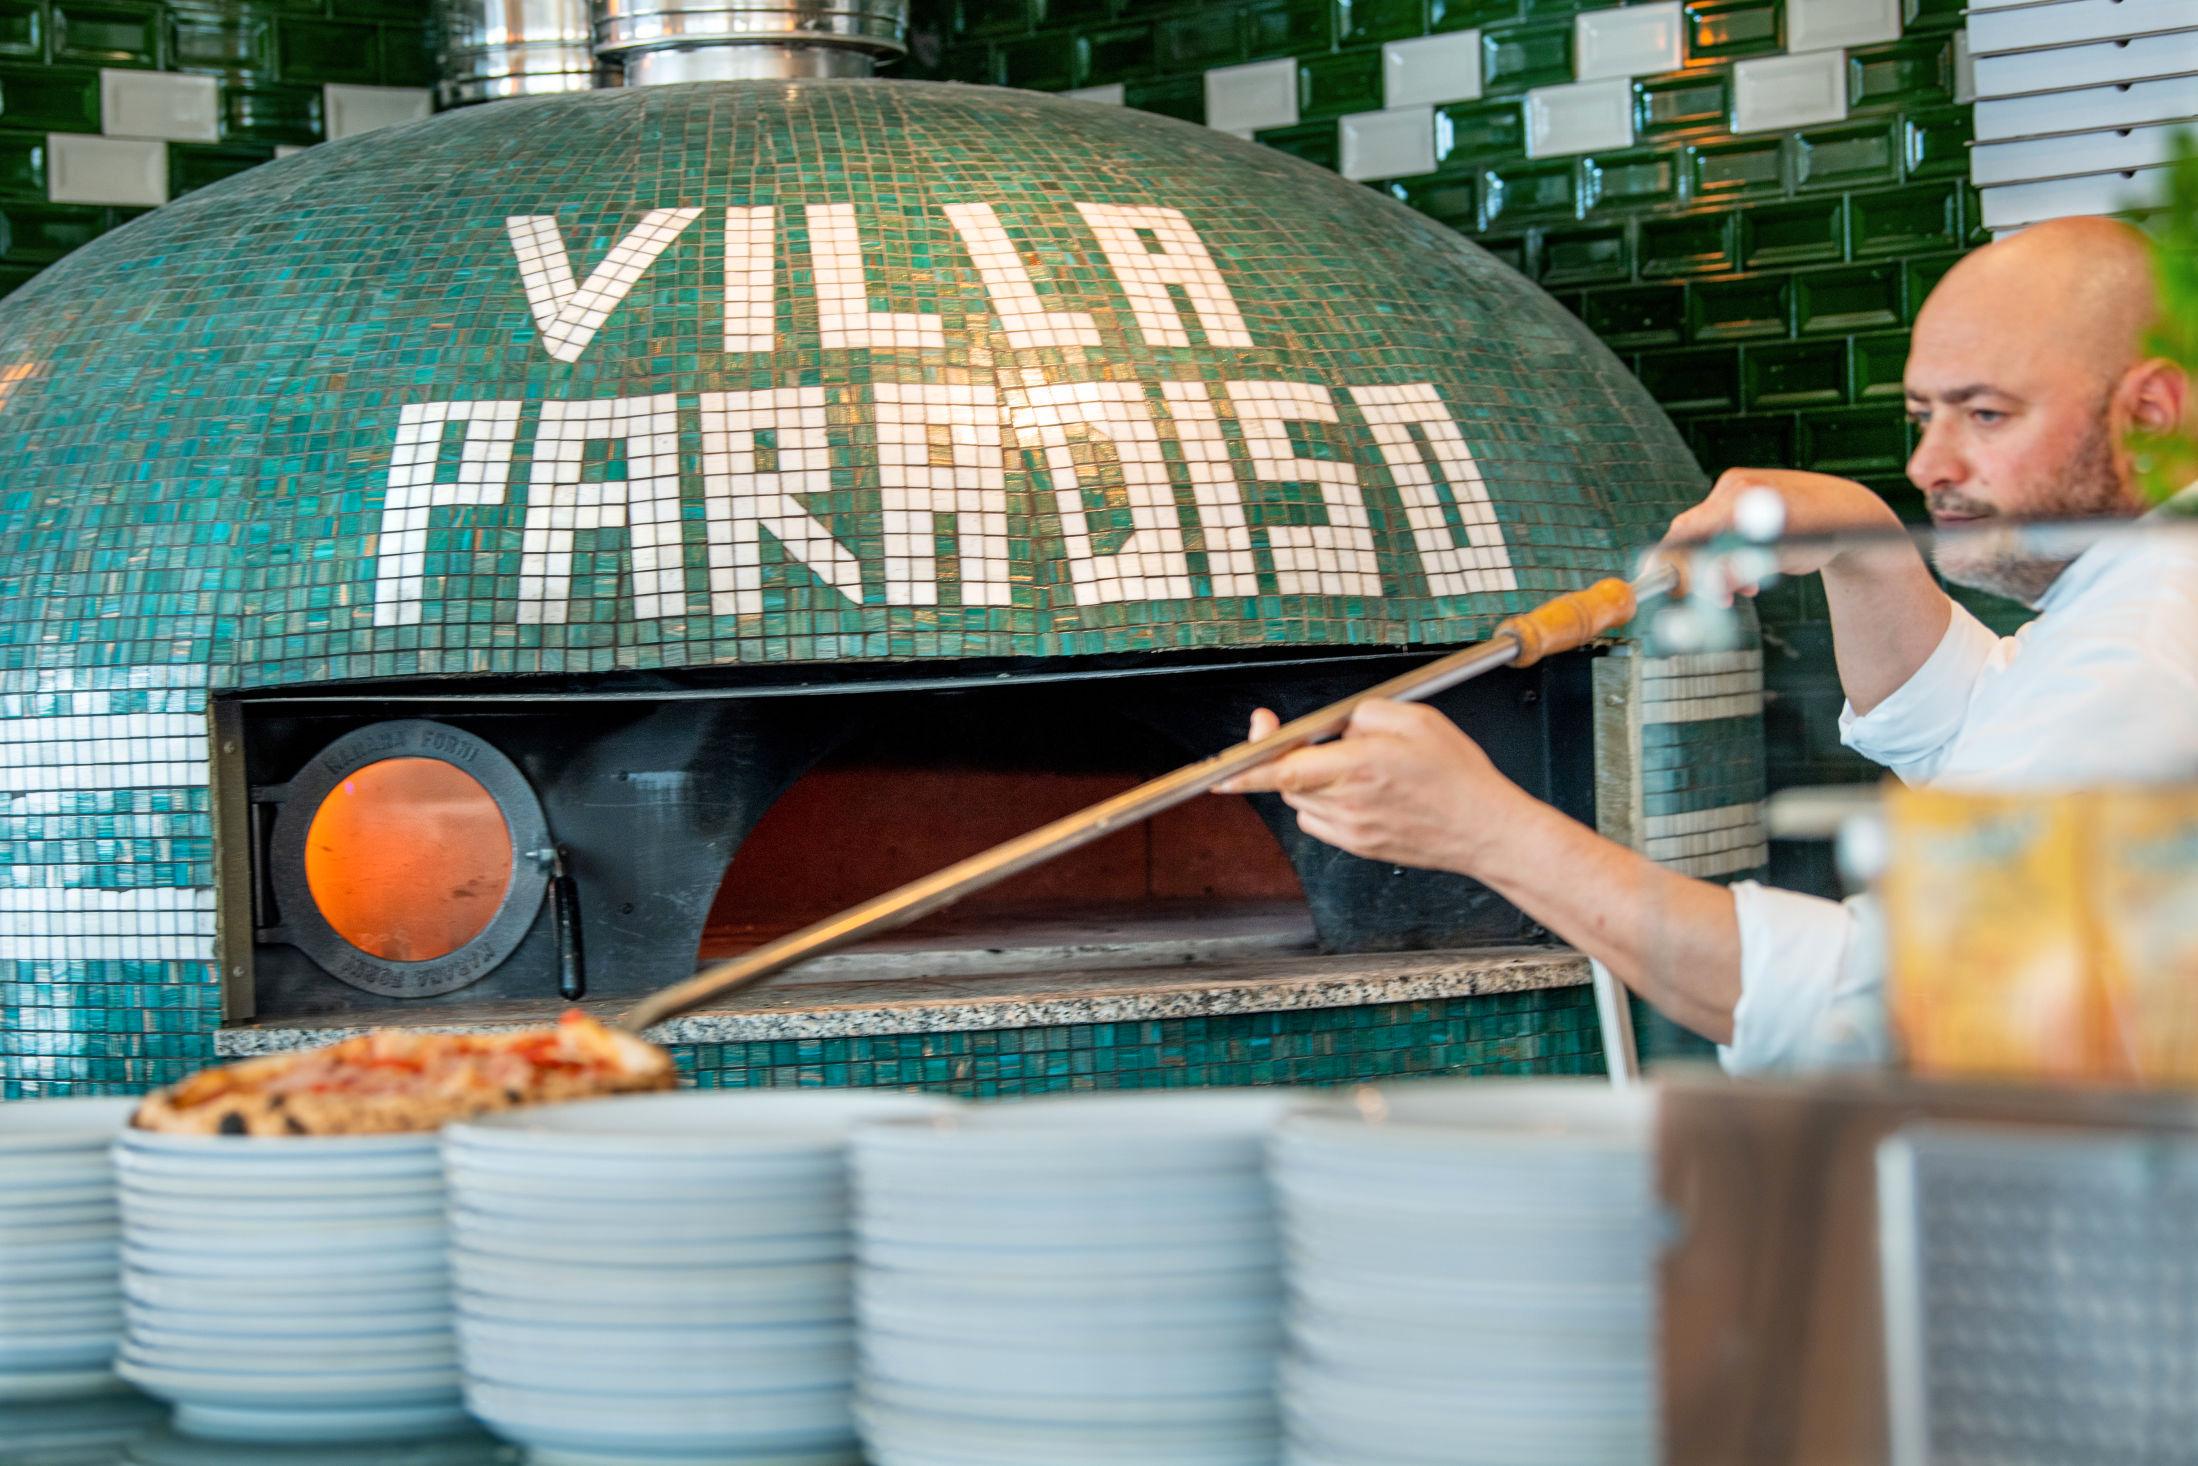 GOD PIZZA: VGs anmelder mener restauranten bør holde seg til pizza og dessert. Foto: Helge Mikalsen/VG